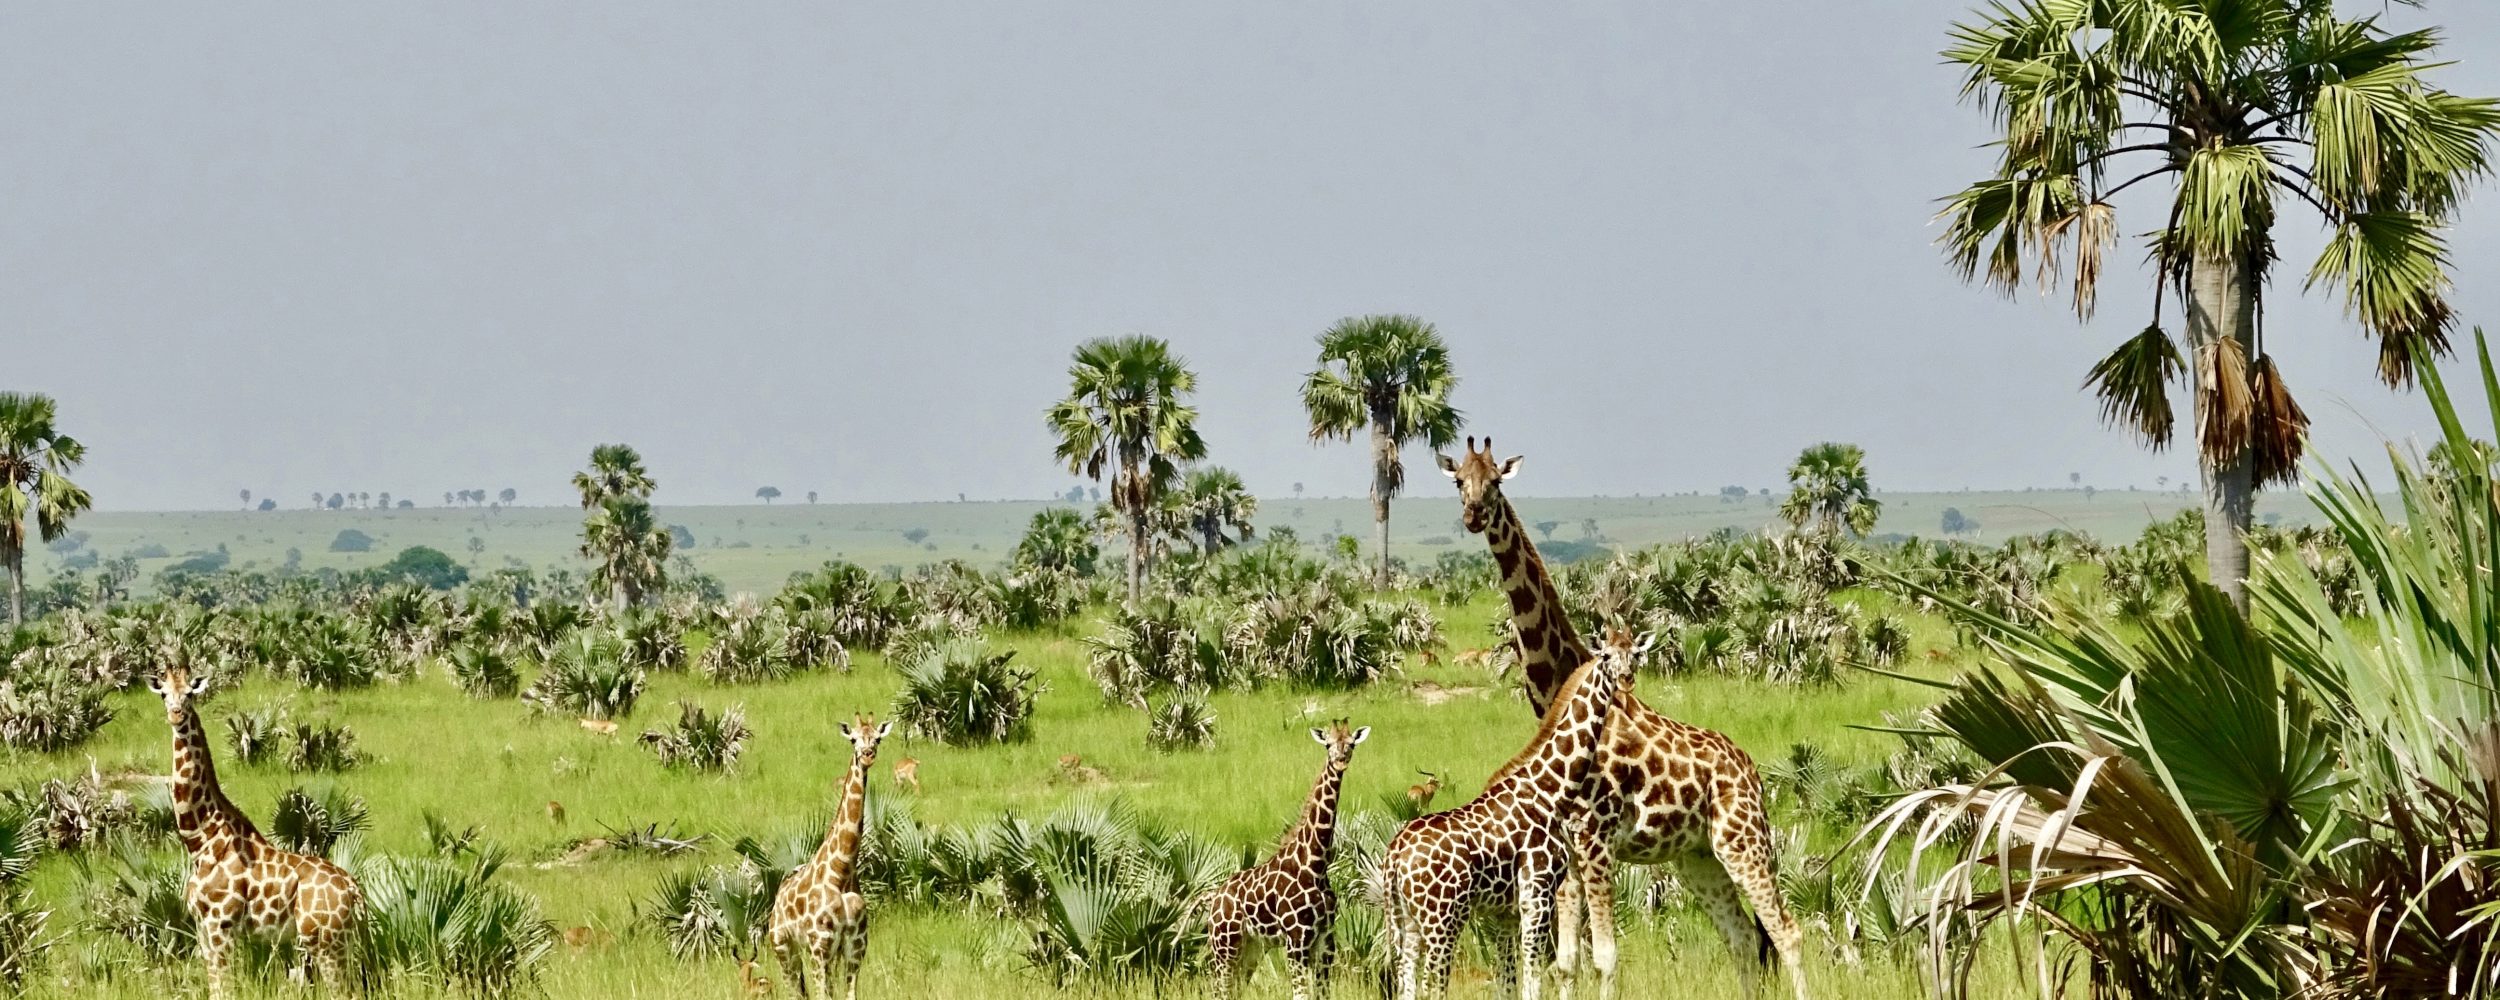 parc national de murchison ouganda girafe